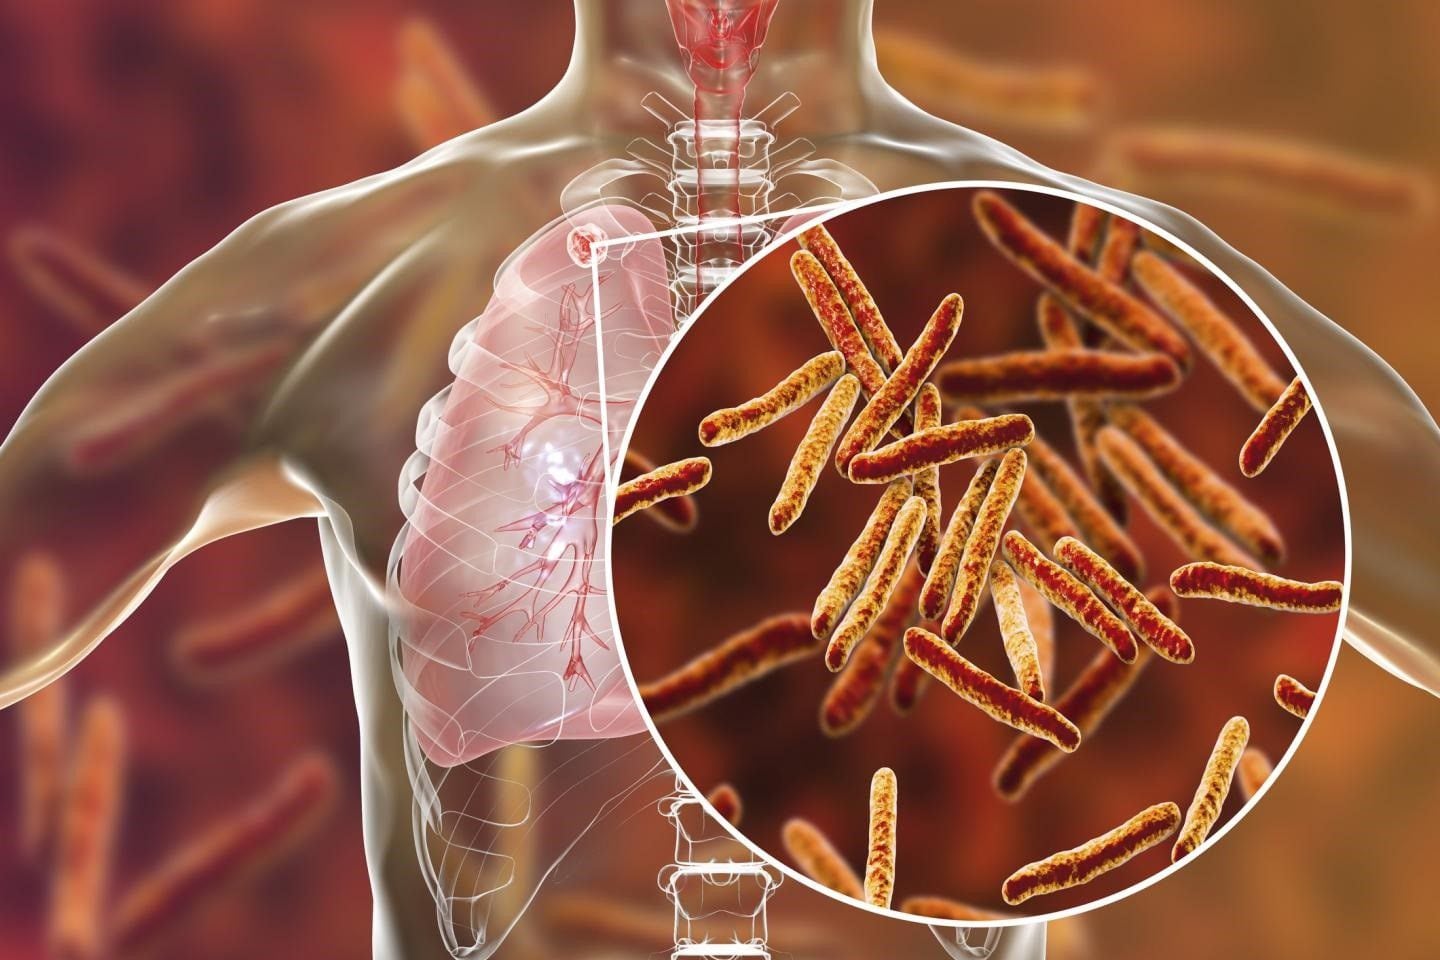 La bacteria de la tuberculosis queda alojada normalmente en el pulmón o en las zonas cercanas al pulmón que luego puede producir una infección (PENN MEDICINE)
